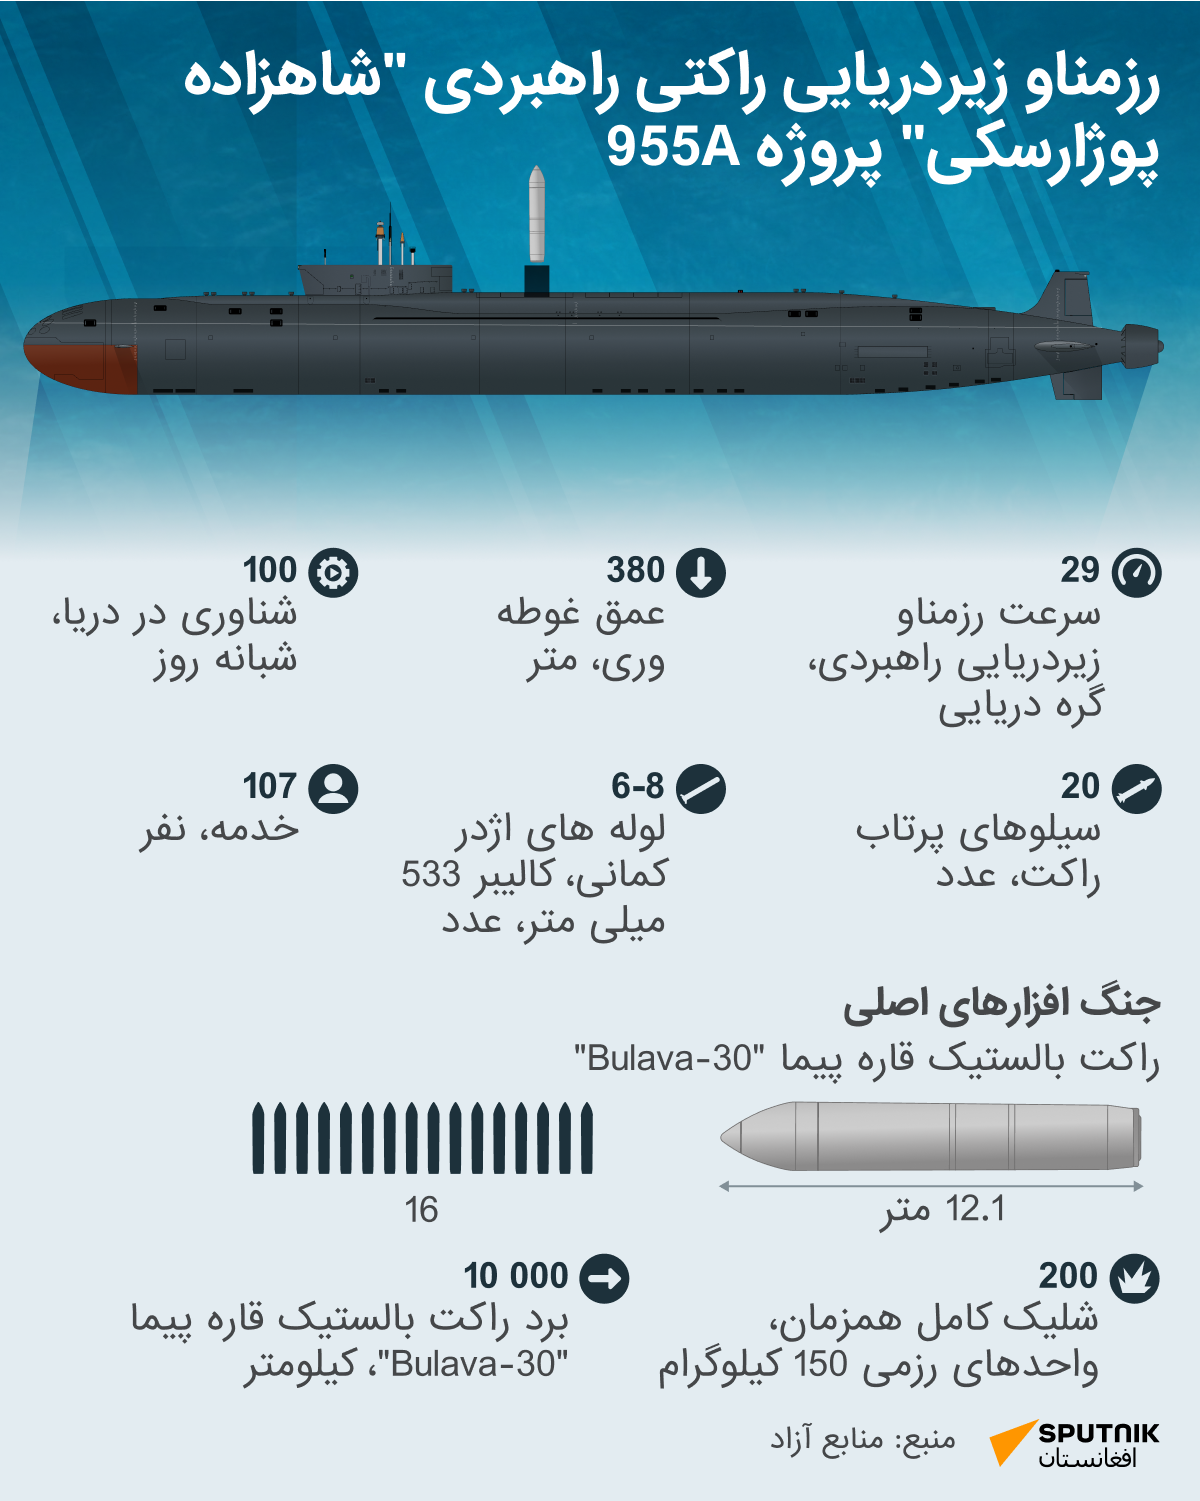 رزمناو زیردریایی راکتی راهبردی شاهزاده پوژارسکی پروژه 955А - اسپوتنیک افغانستان  